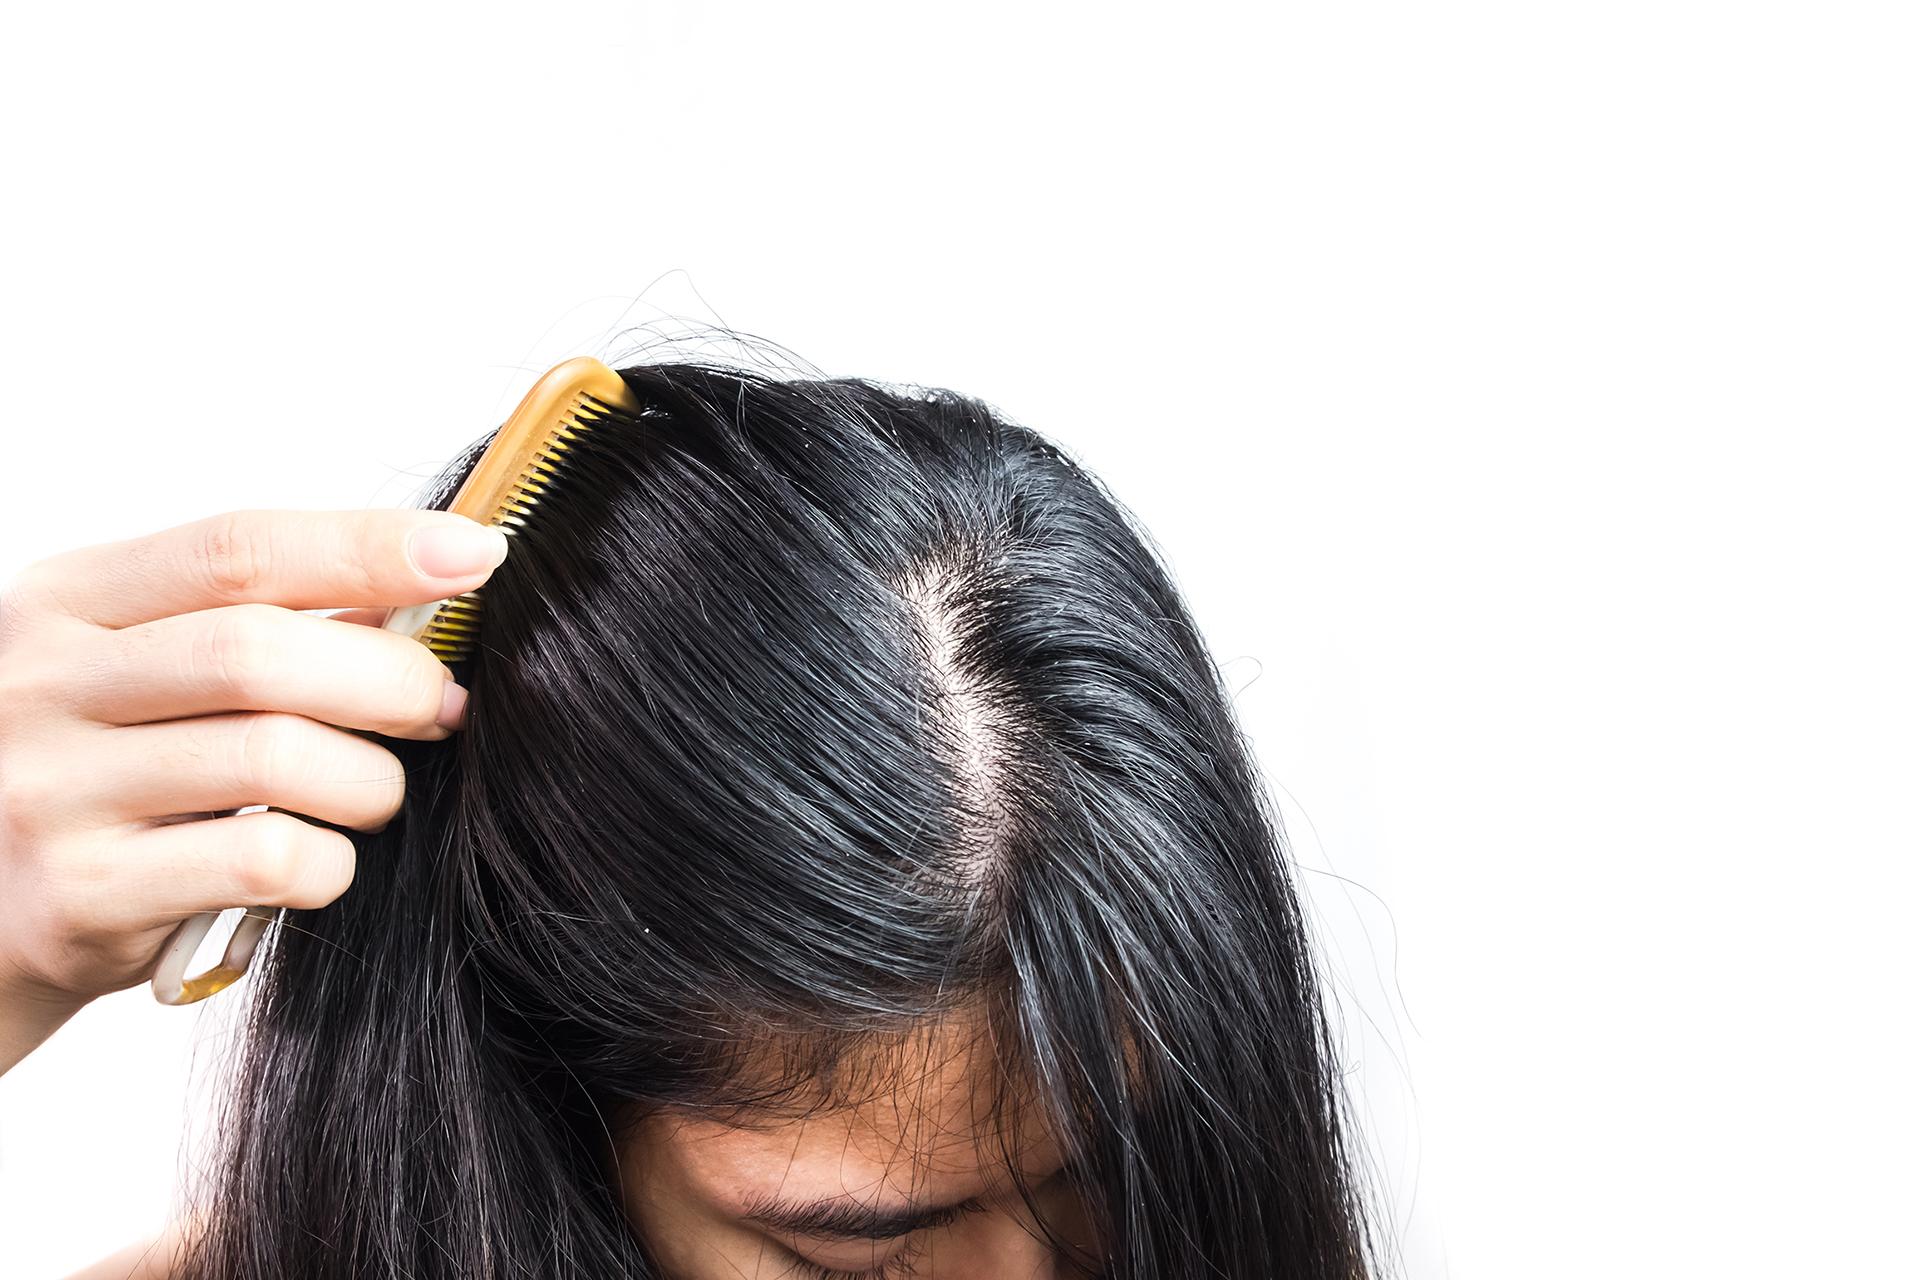 चिकने बालों के 10 घरेलू उपचार जो आपके स्कैल्प को फायदा पहुंचाते हैं